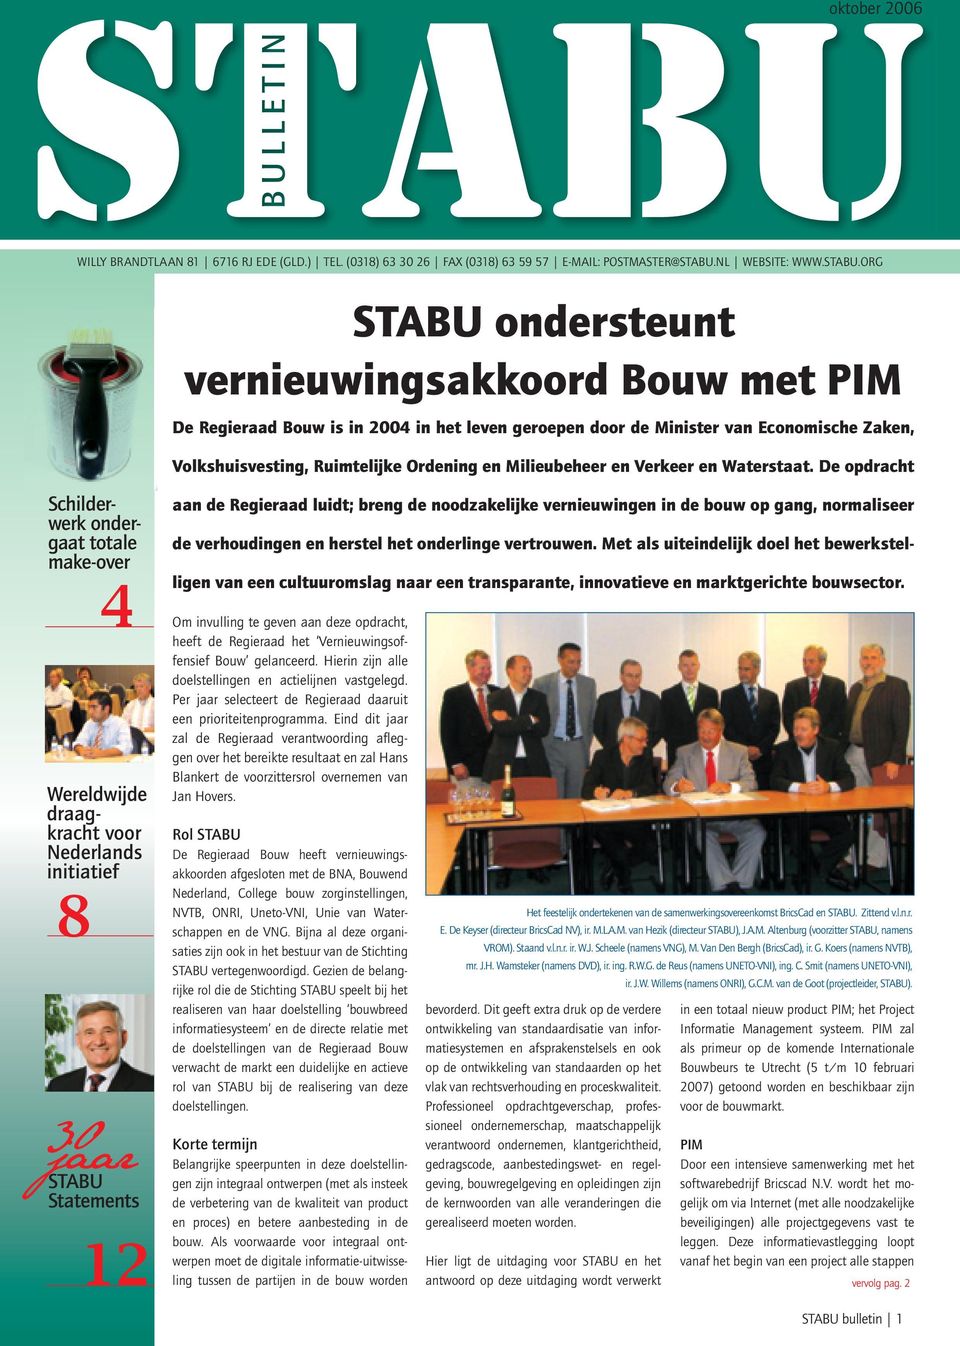 oRG STABU ondersteunt vernieuwingsakkoord Bouw met PIM De Regieraad Bouw is in 2004 in het leven geroepen door de Minister van Economische Zaken, Volkshuisvesting, Ruimtelijke Ordening en